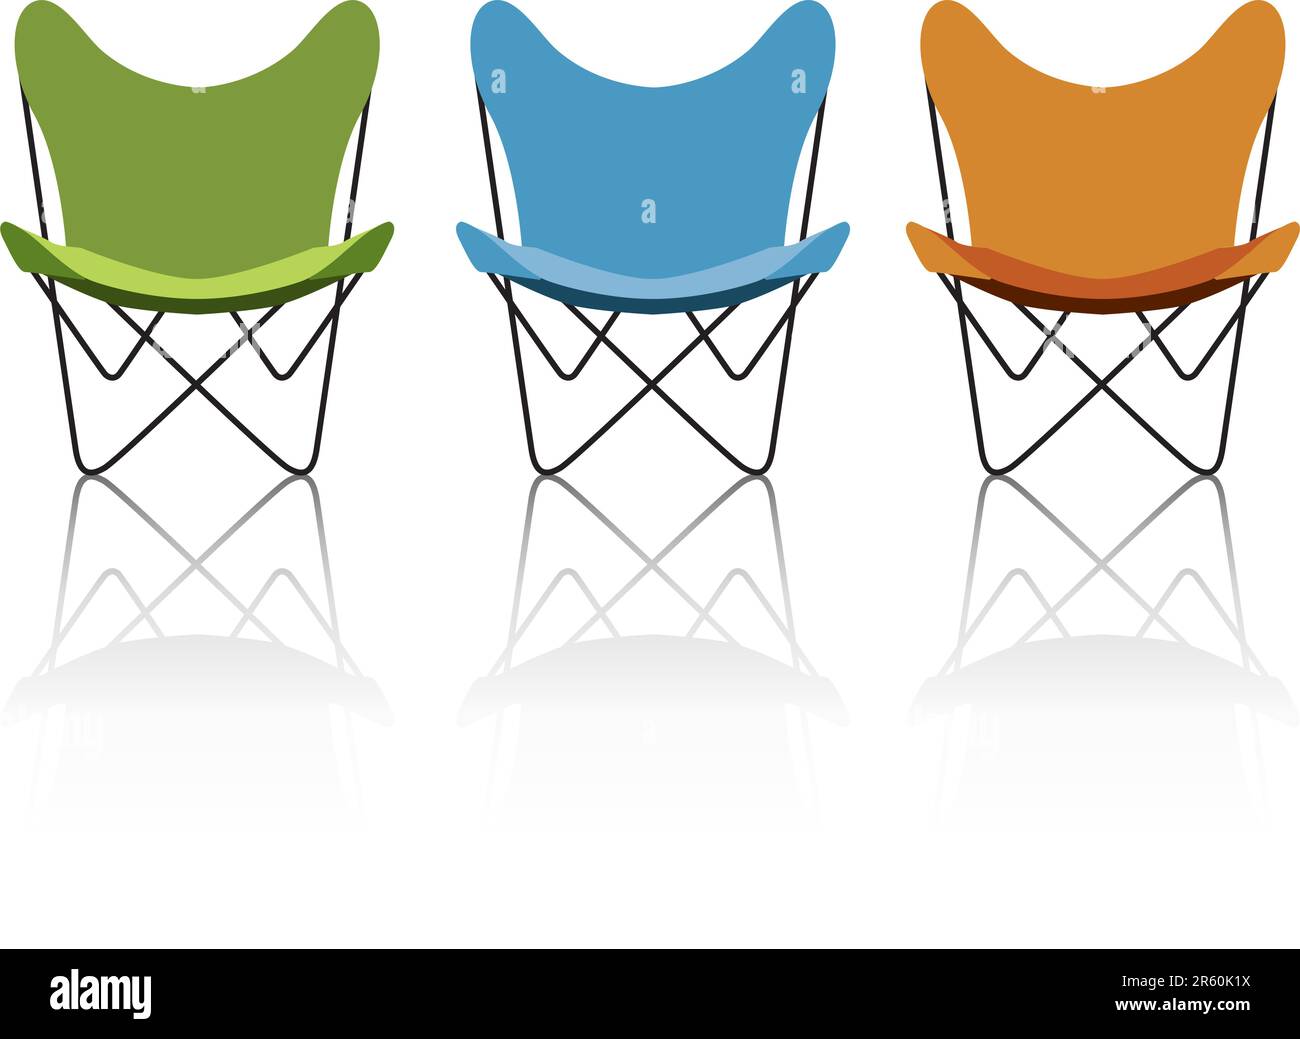 Trio de chaises papillon vintage/rétro avec réflexion ; fichier facile à modifier pour changer les couleurs de chaise en toute simplicité. Illustration de Vecteur